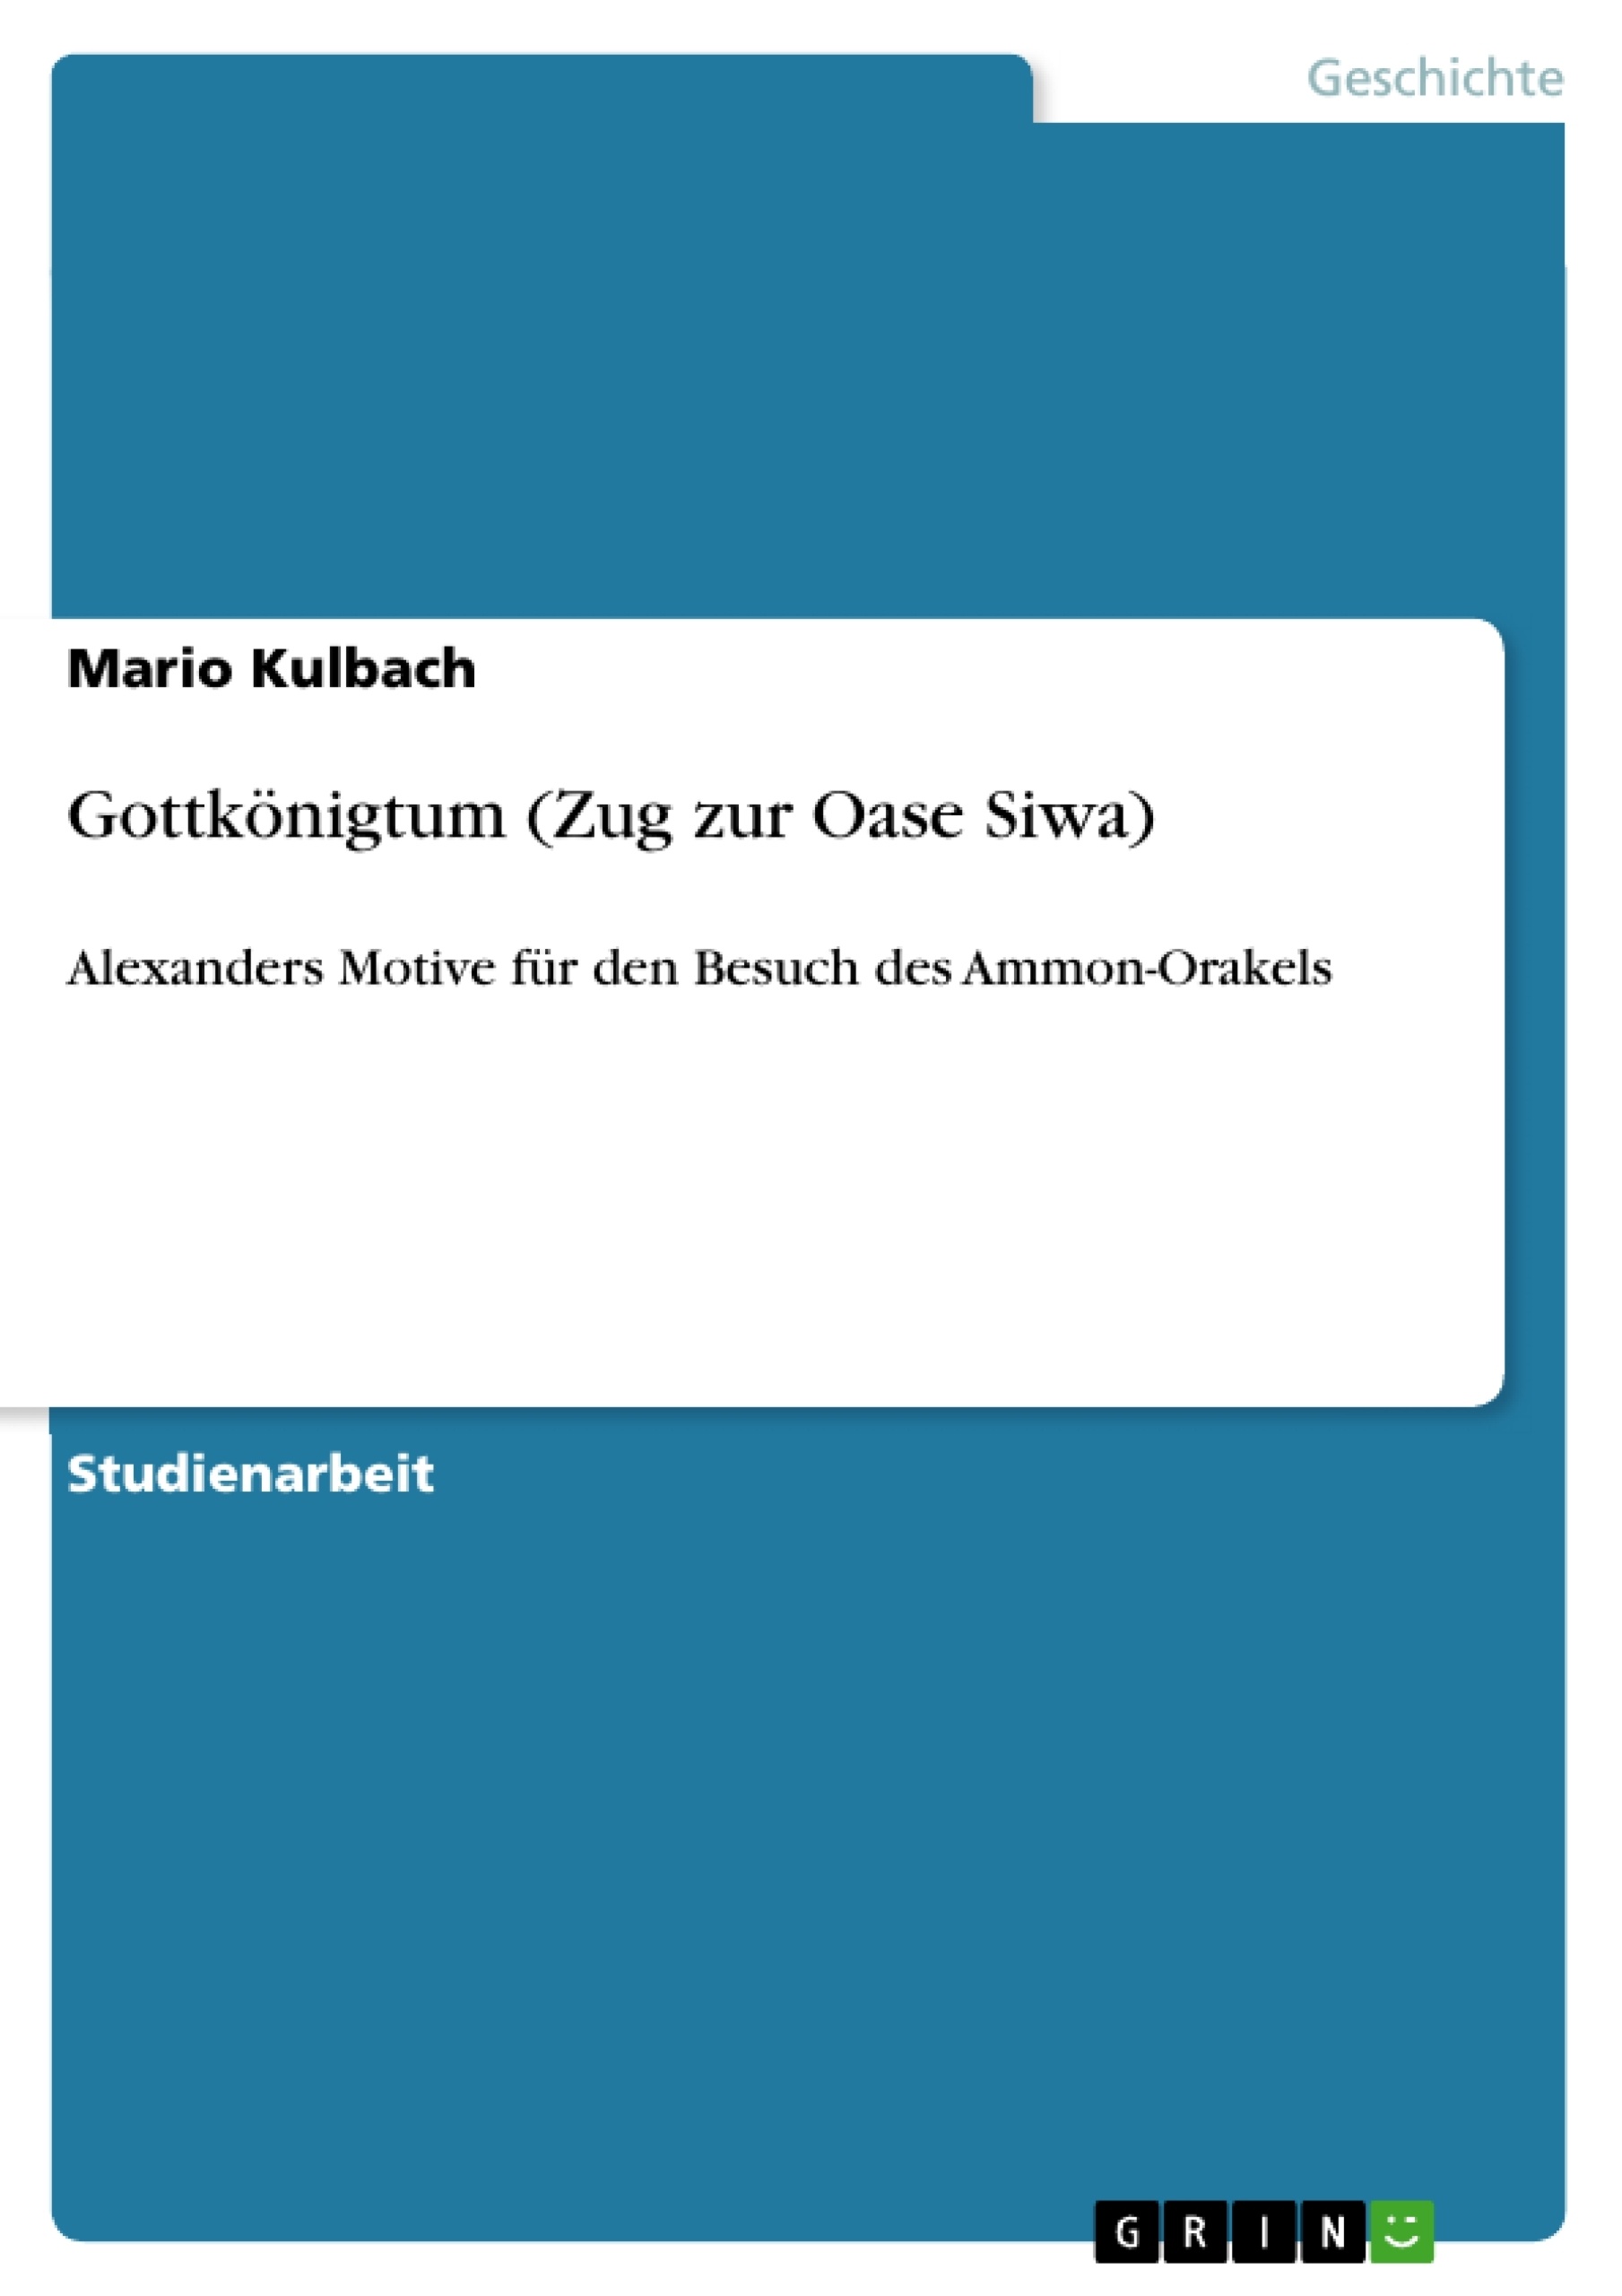 Title: Gottkönigtum (Zug zur Oase Siwa)